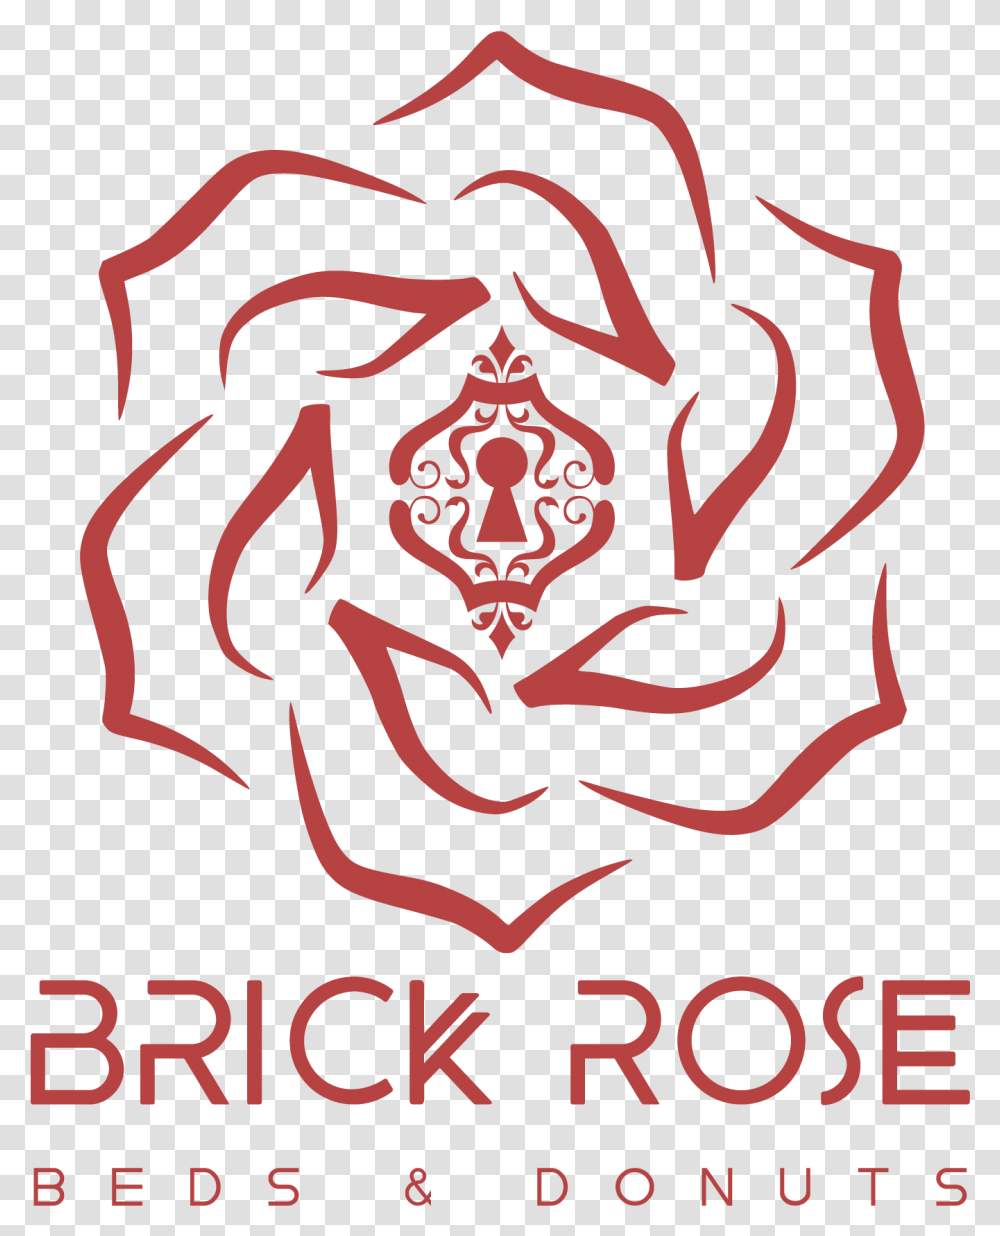 Brick Rose Beds Amp Donuts Illustration, Poster, Advertisement, Emblem Transparent Png